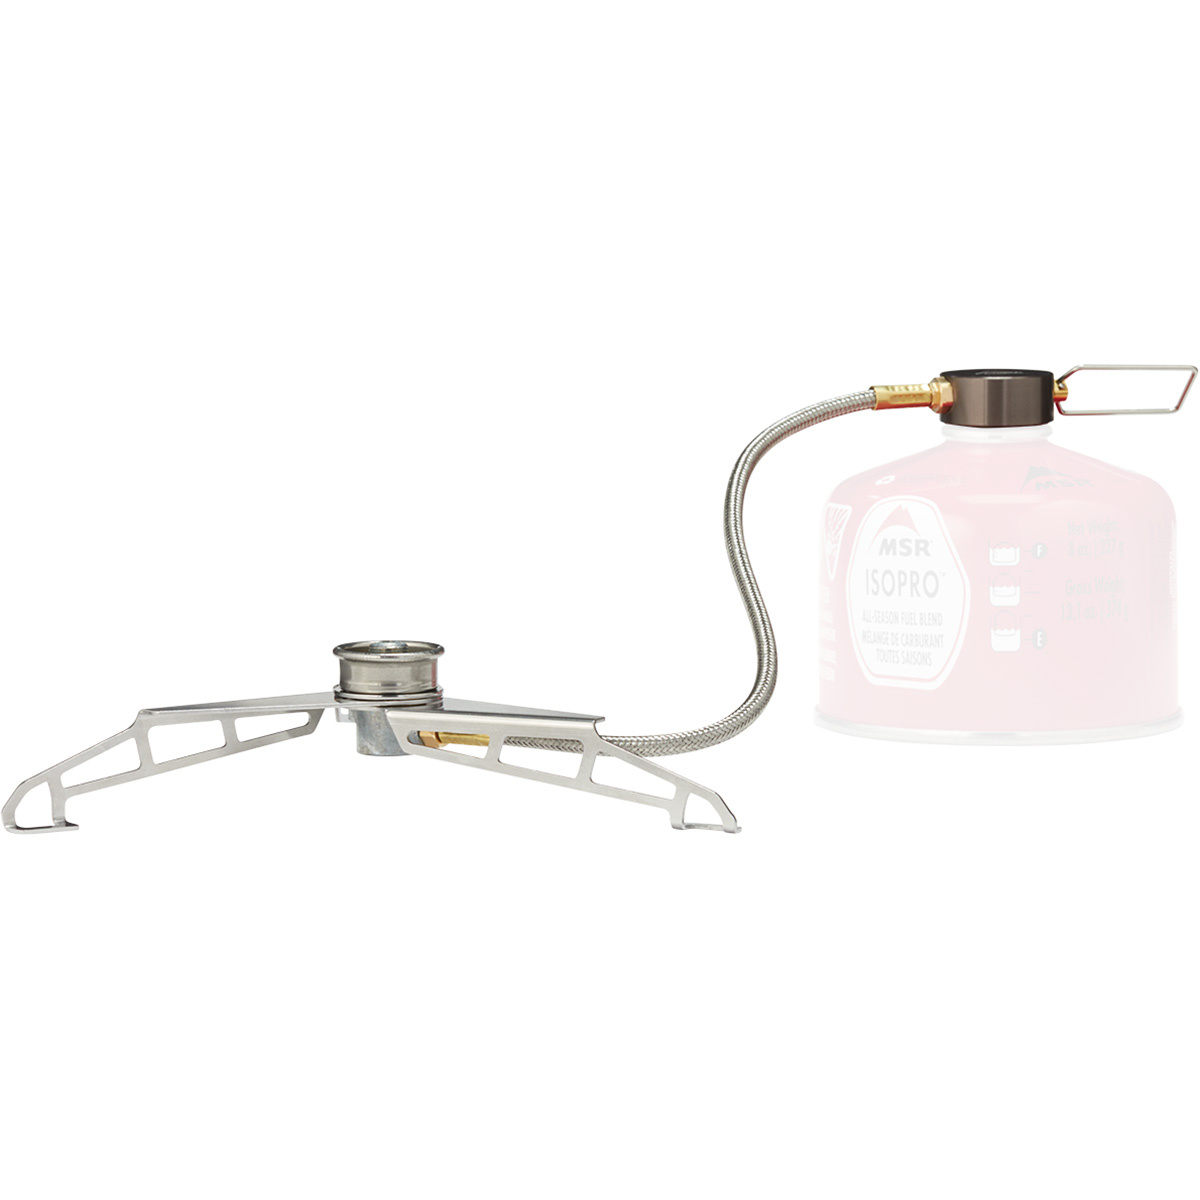 Image of MSR Adattatore per fornello LowDown Remote Stove Adapter